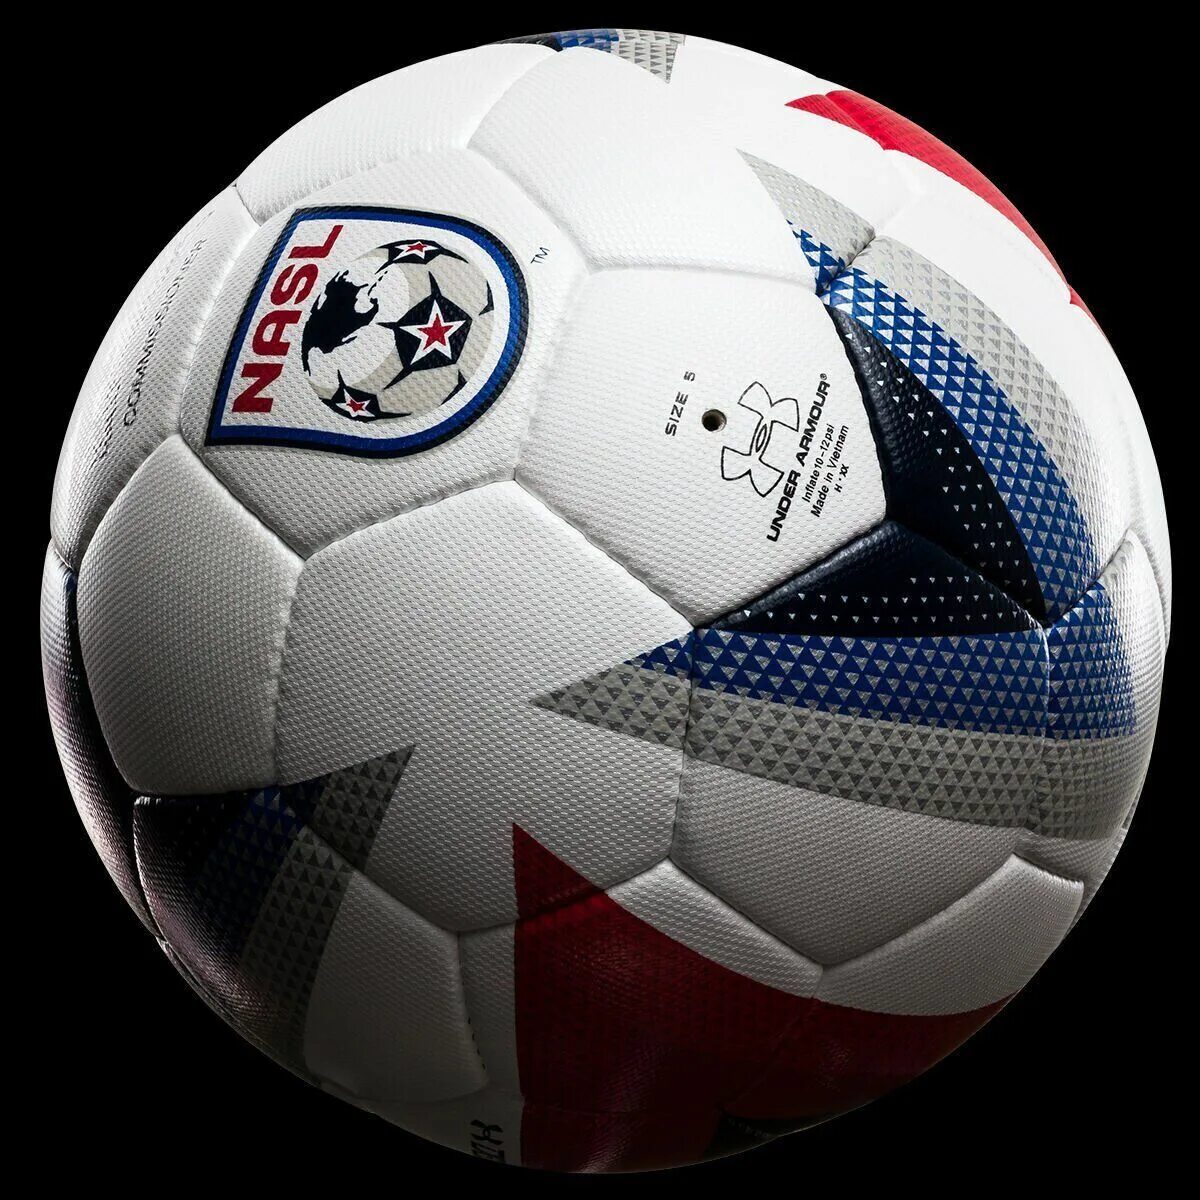 Футбольный мяч ФИФА quality 2007 approved адидас. Мяч Lofty FIFA approved. Классический футбольный мяч FIFA quality. FIFA Ball professional..